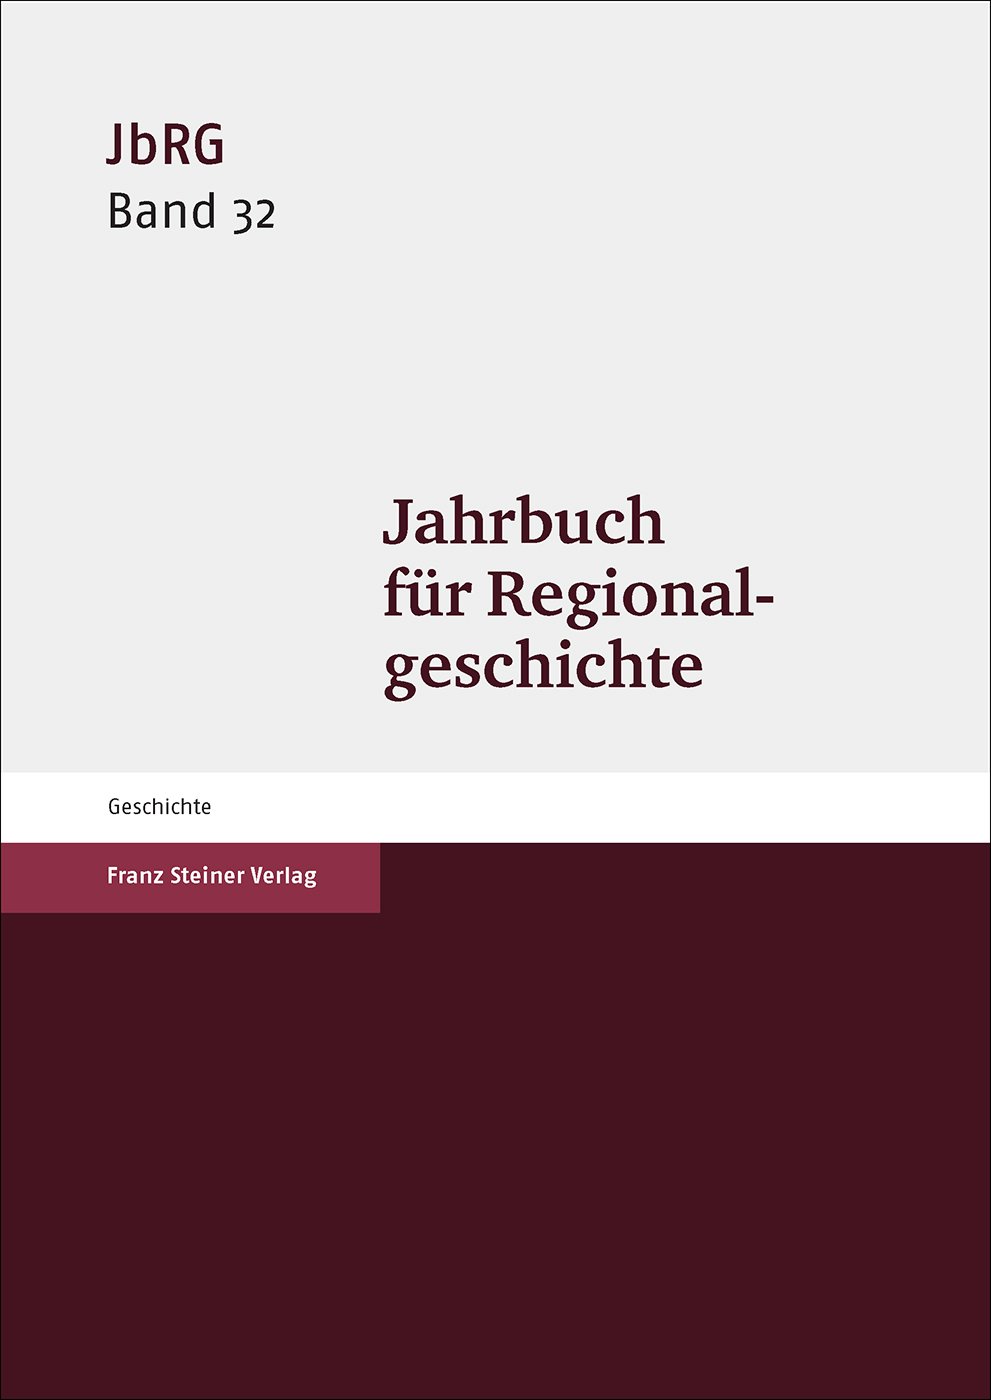 Jahrbuch für Regionalgeschichte 32 (2014)